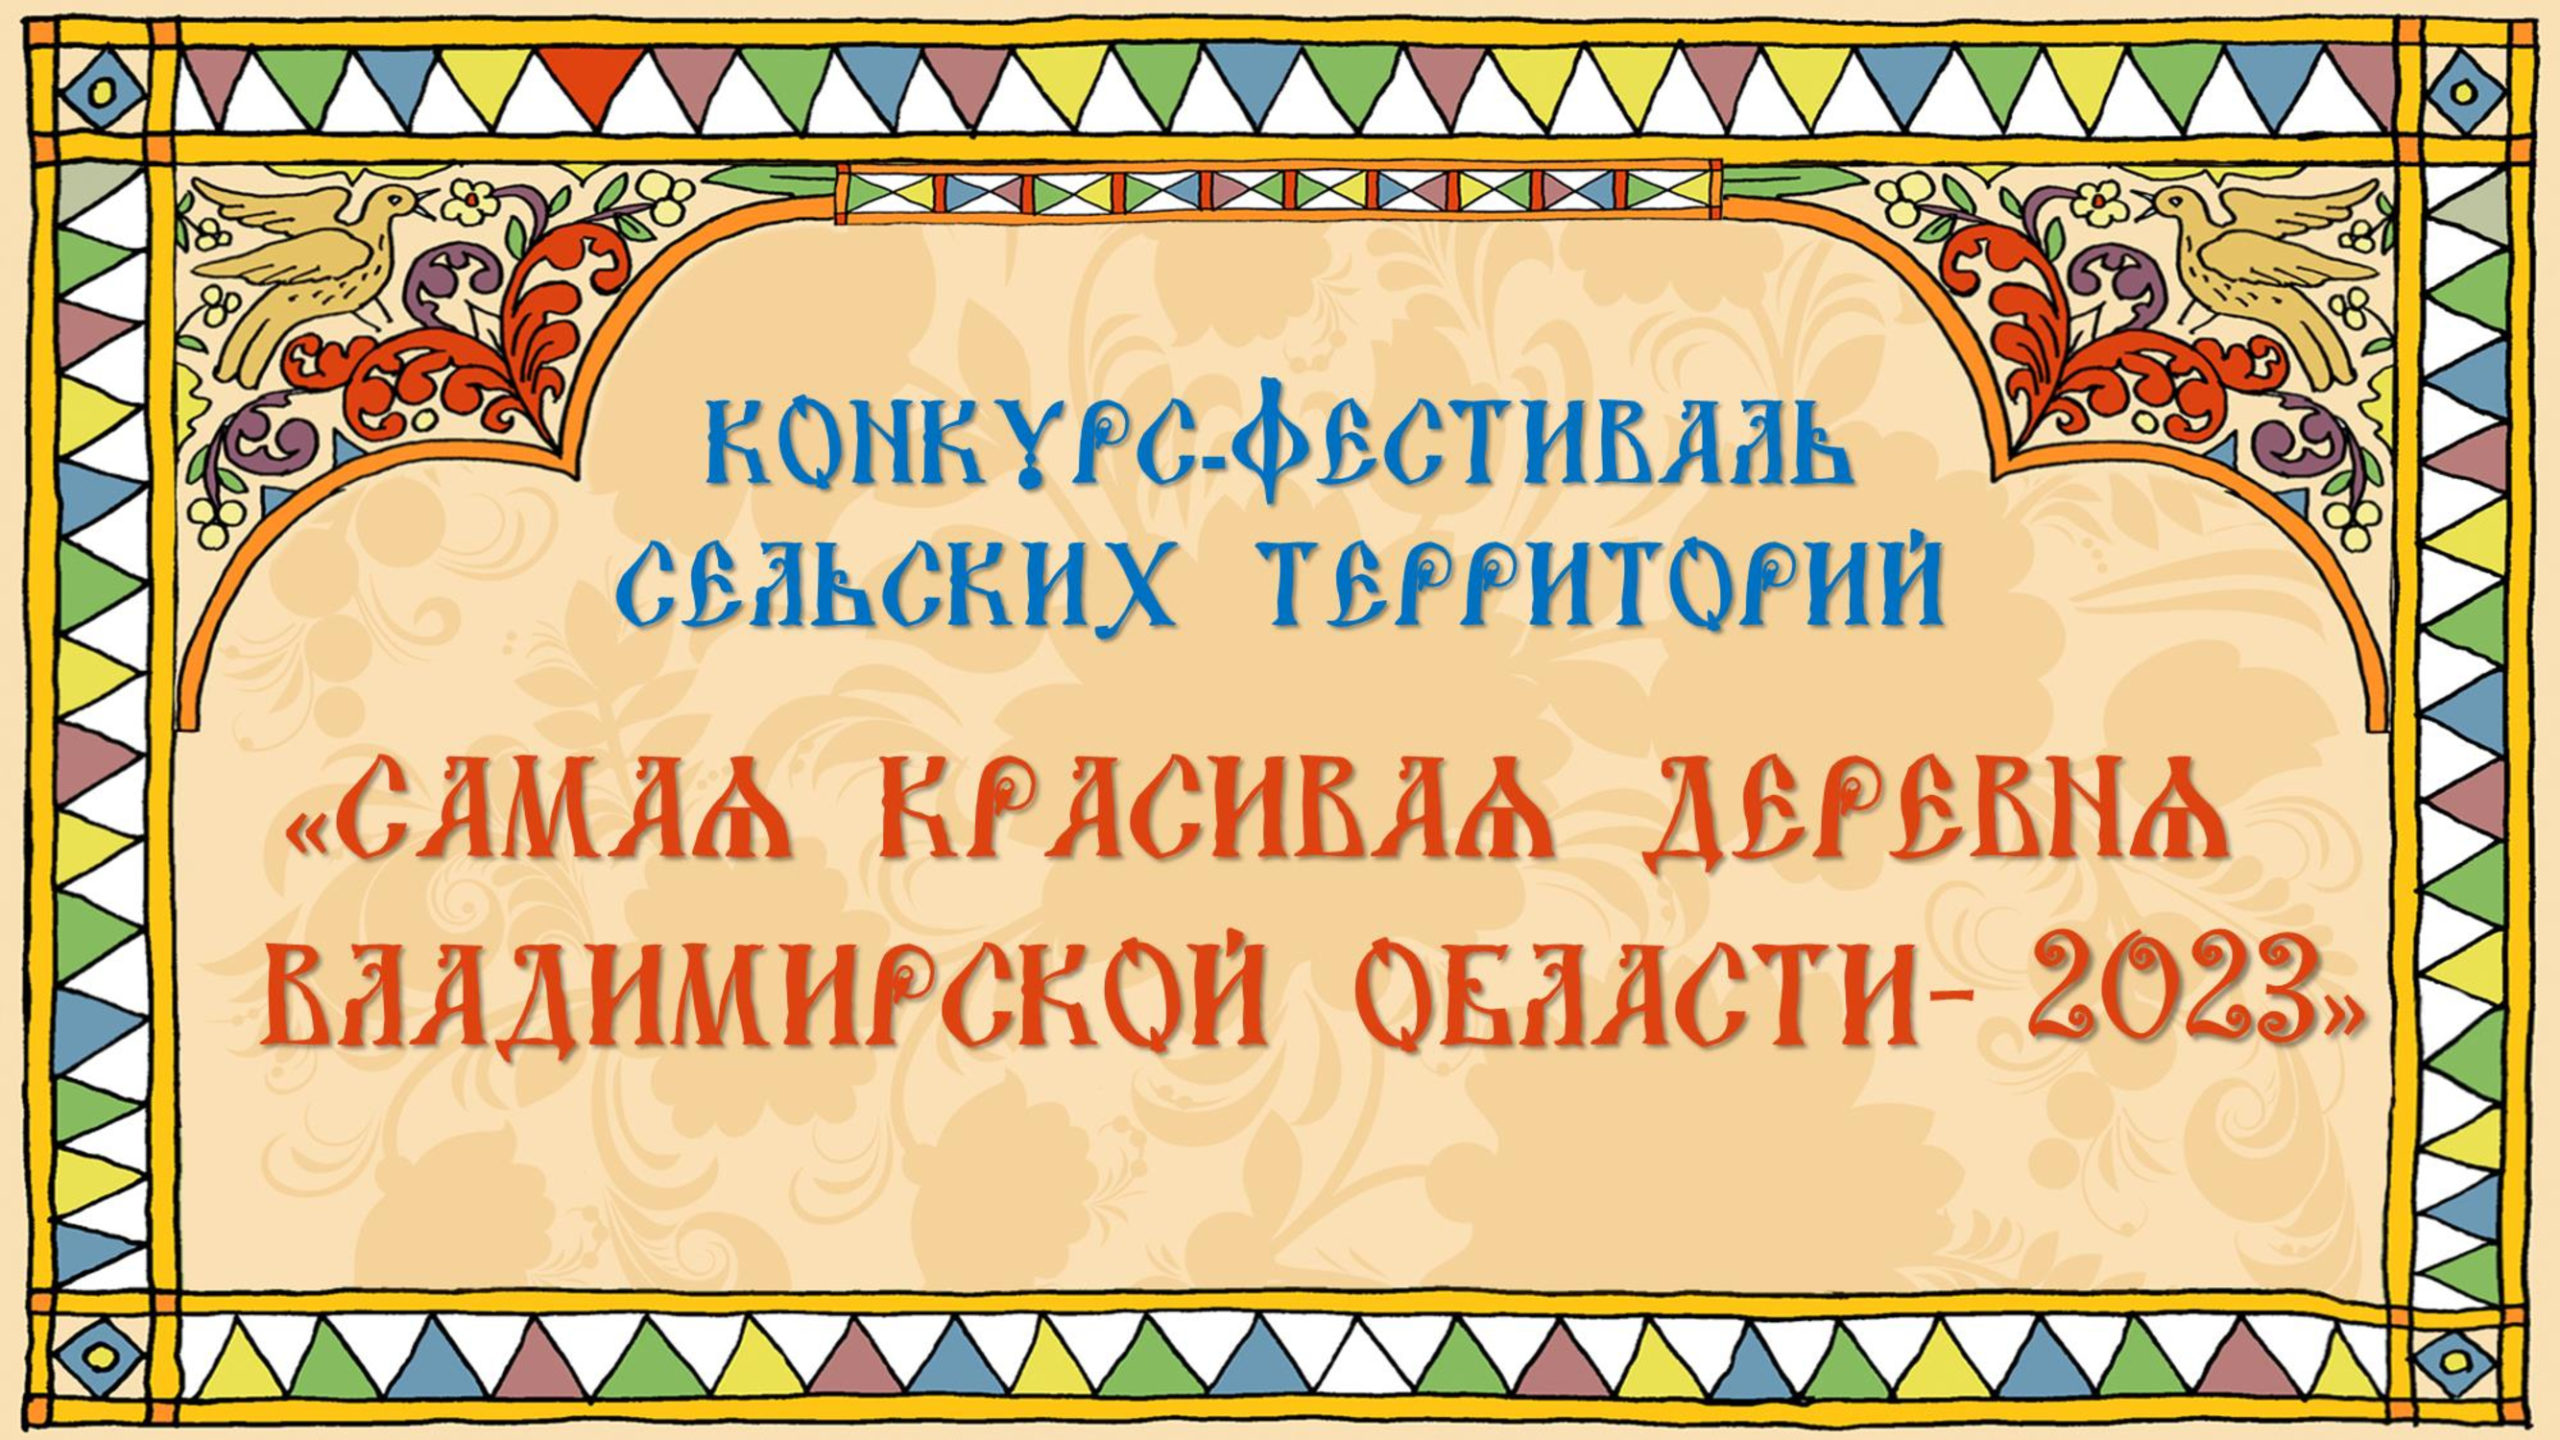 Конкурс Фестиваль сельских территорий во Владимирской области 2023 — Официальный сайт